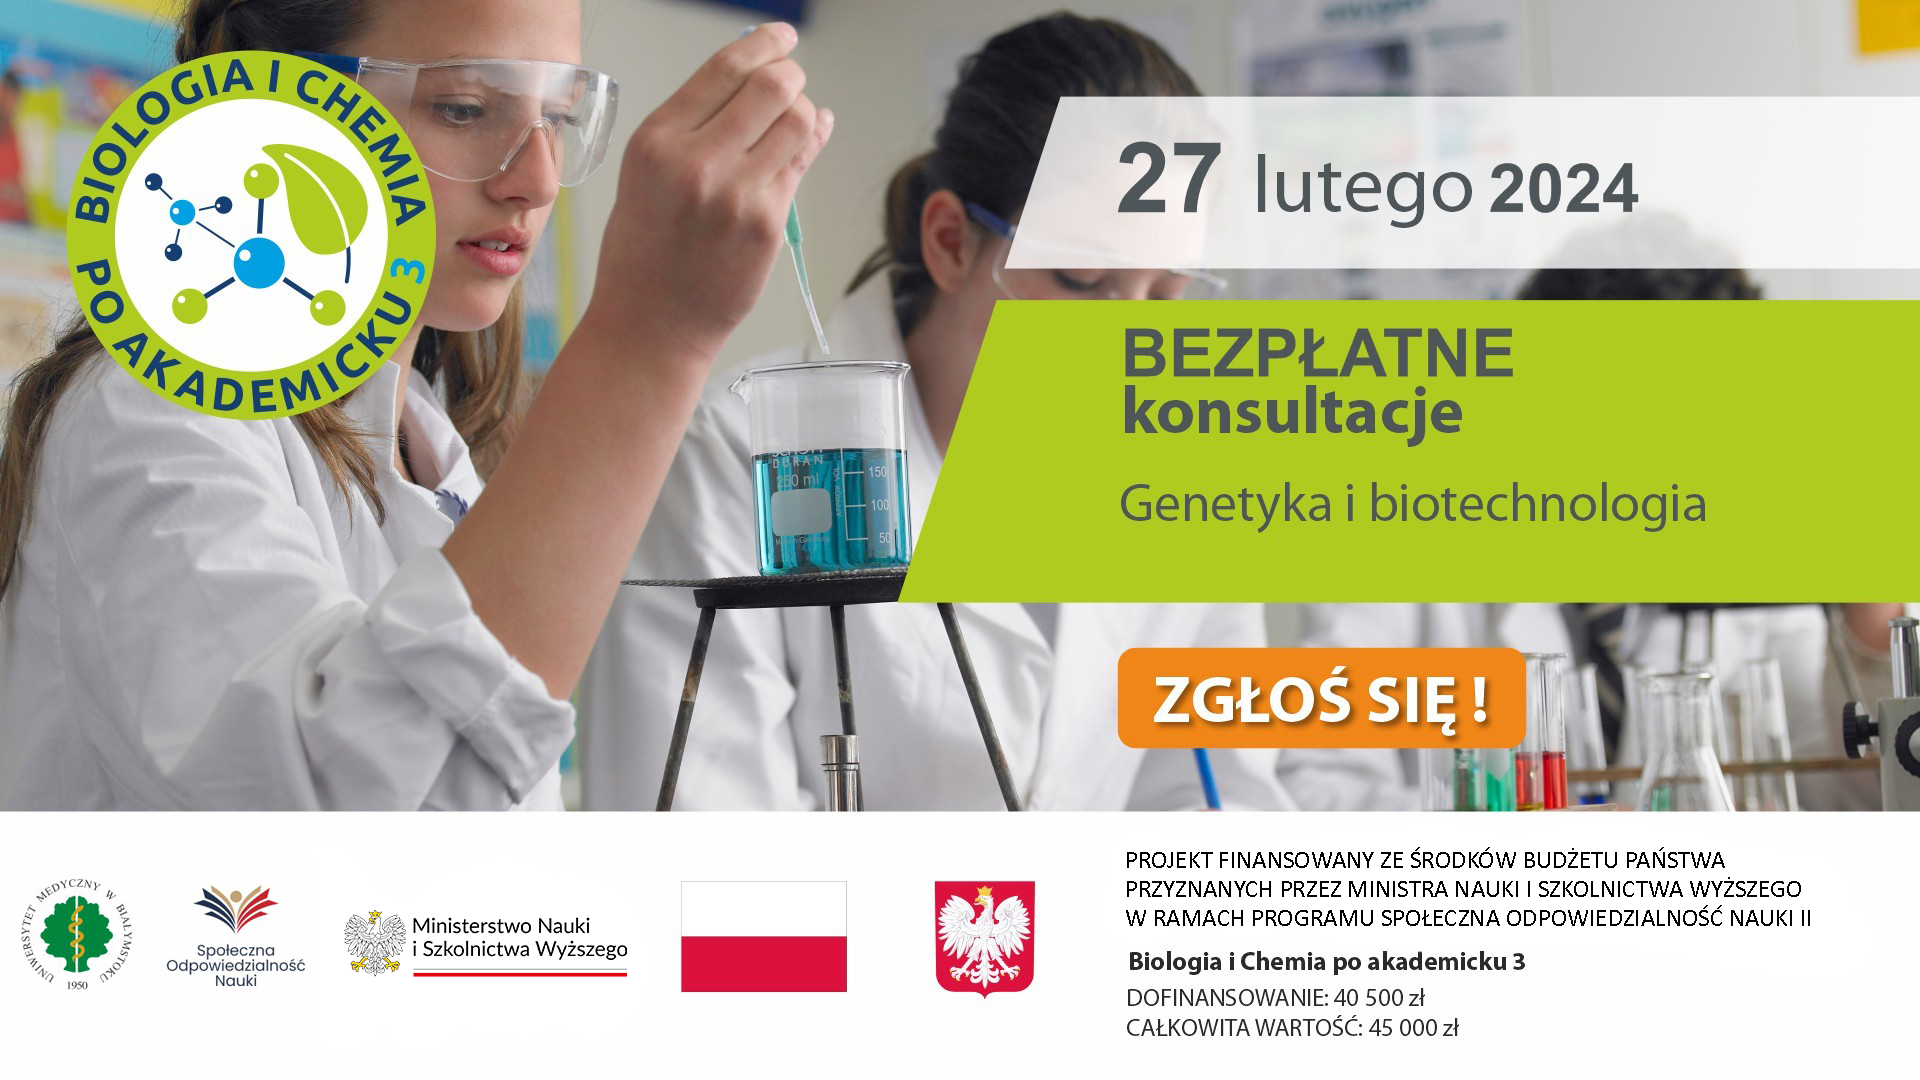 Konsultacje w dniu 27 lutego 2024 Genetyka i biotechnologia